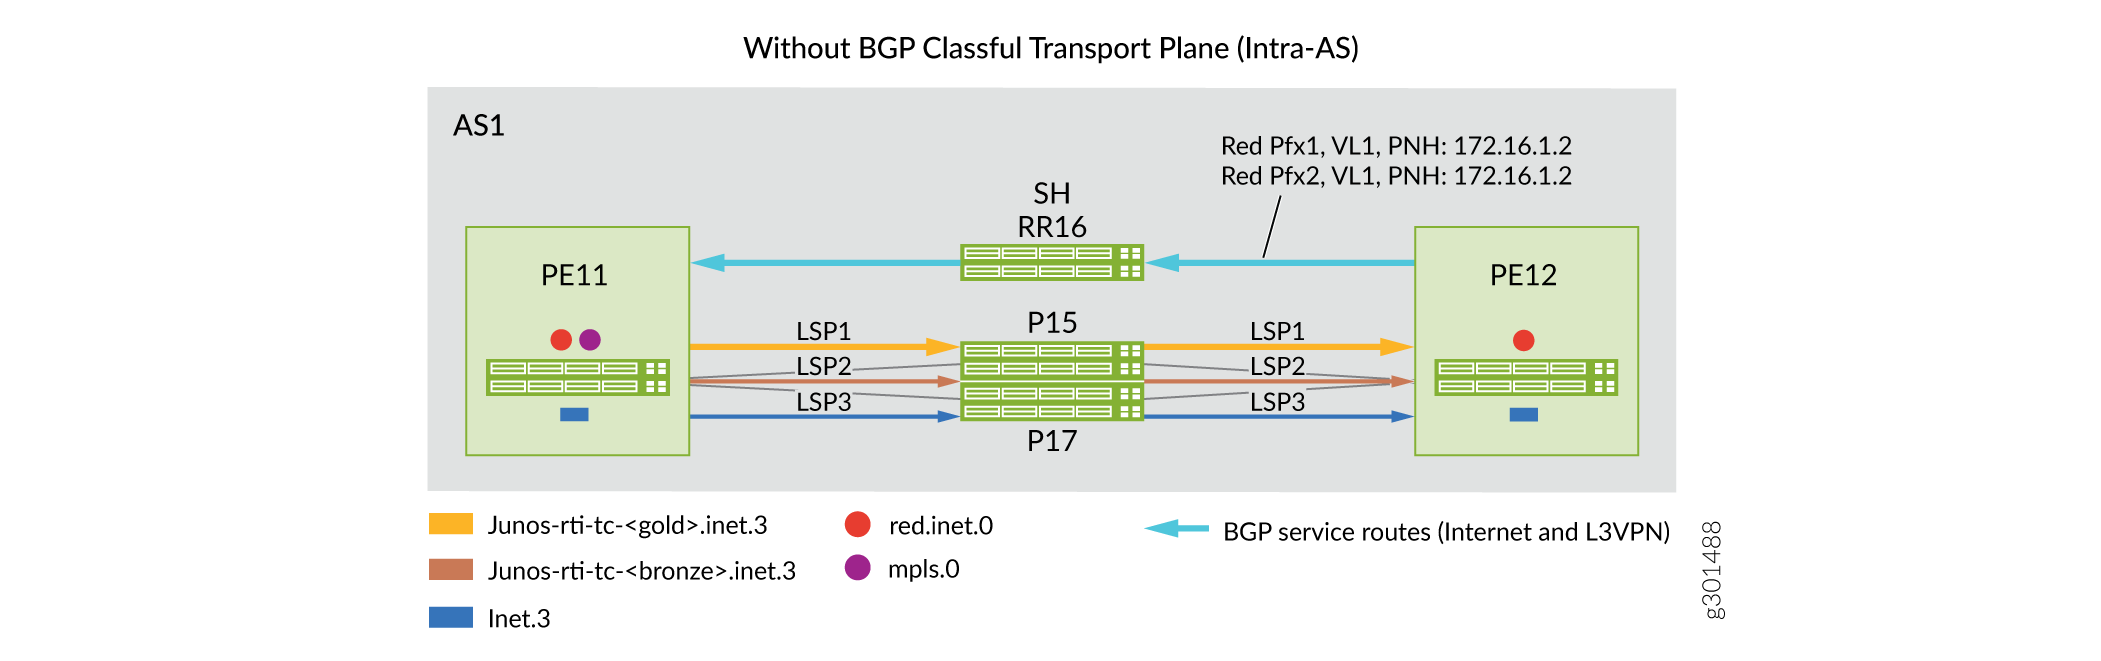 Domínio intra-AS: Cenários de antes e depois para a implementação de planos de transporte de classe BGP